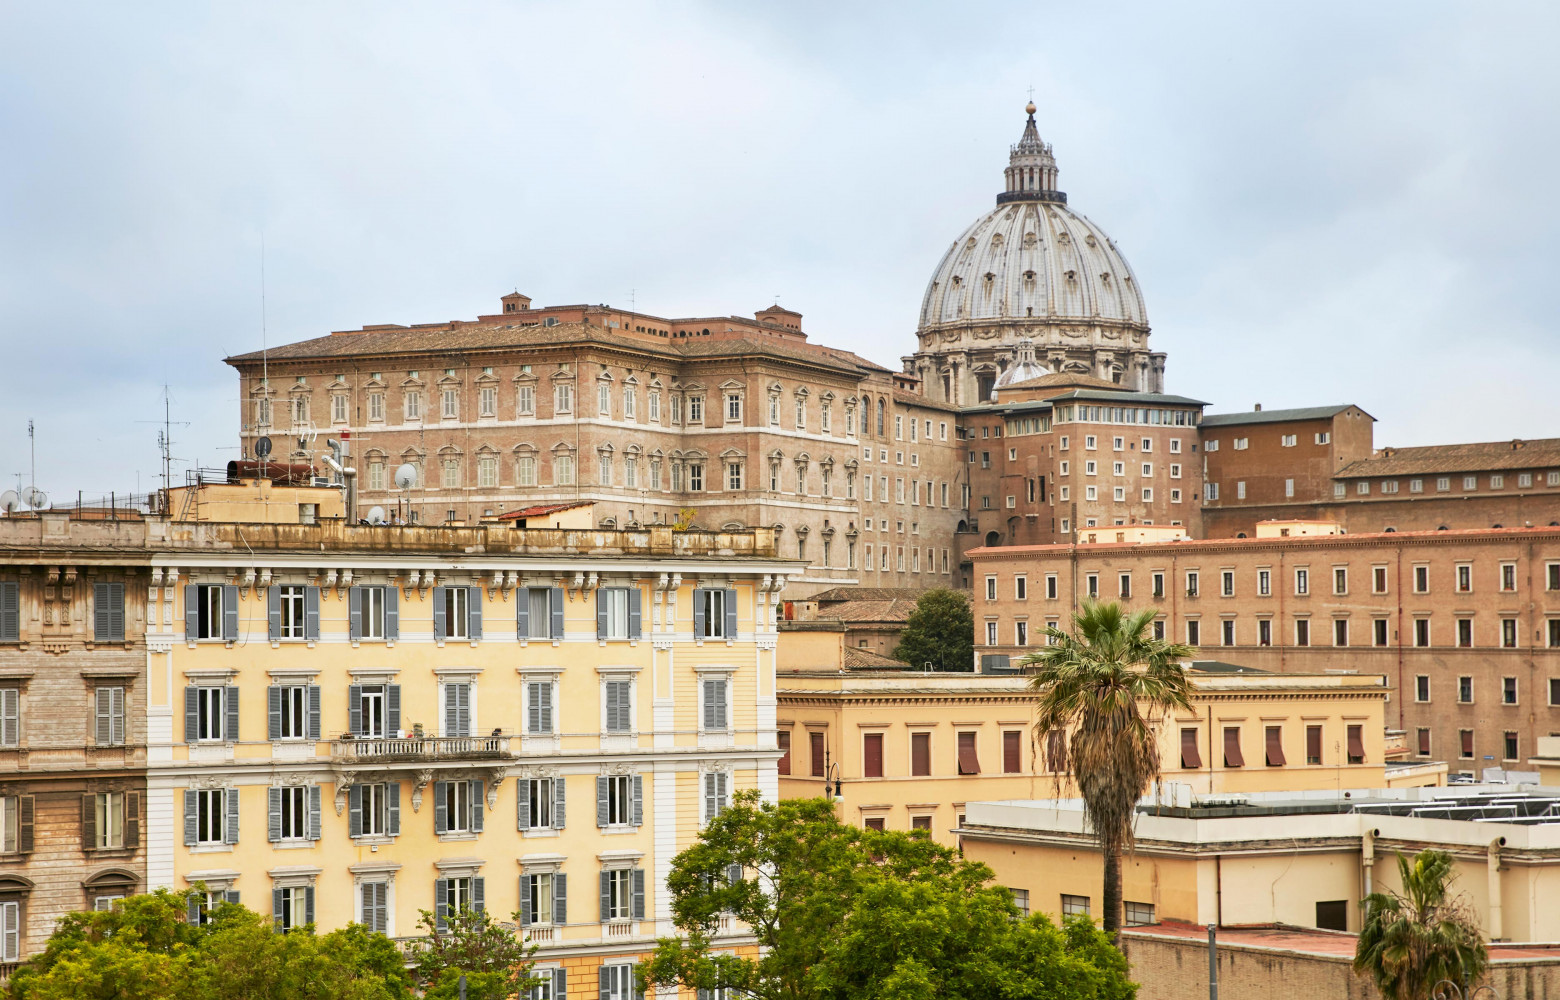 La majesté et l’histoire romaines sous les yeux : la cité du Vatican et la basilique Saint-Pierre.